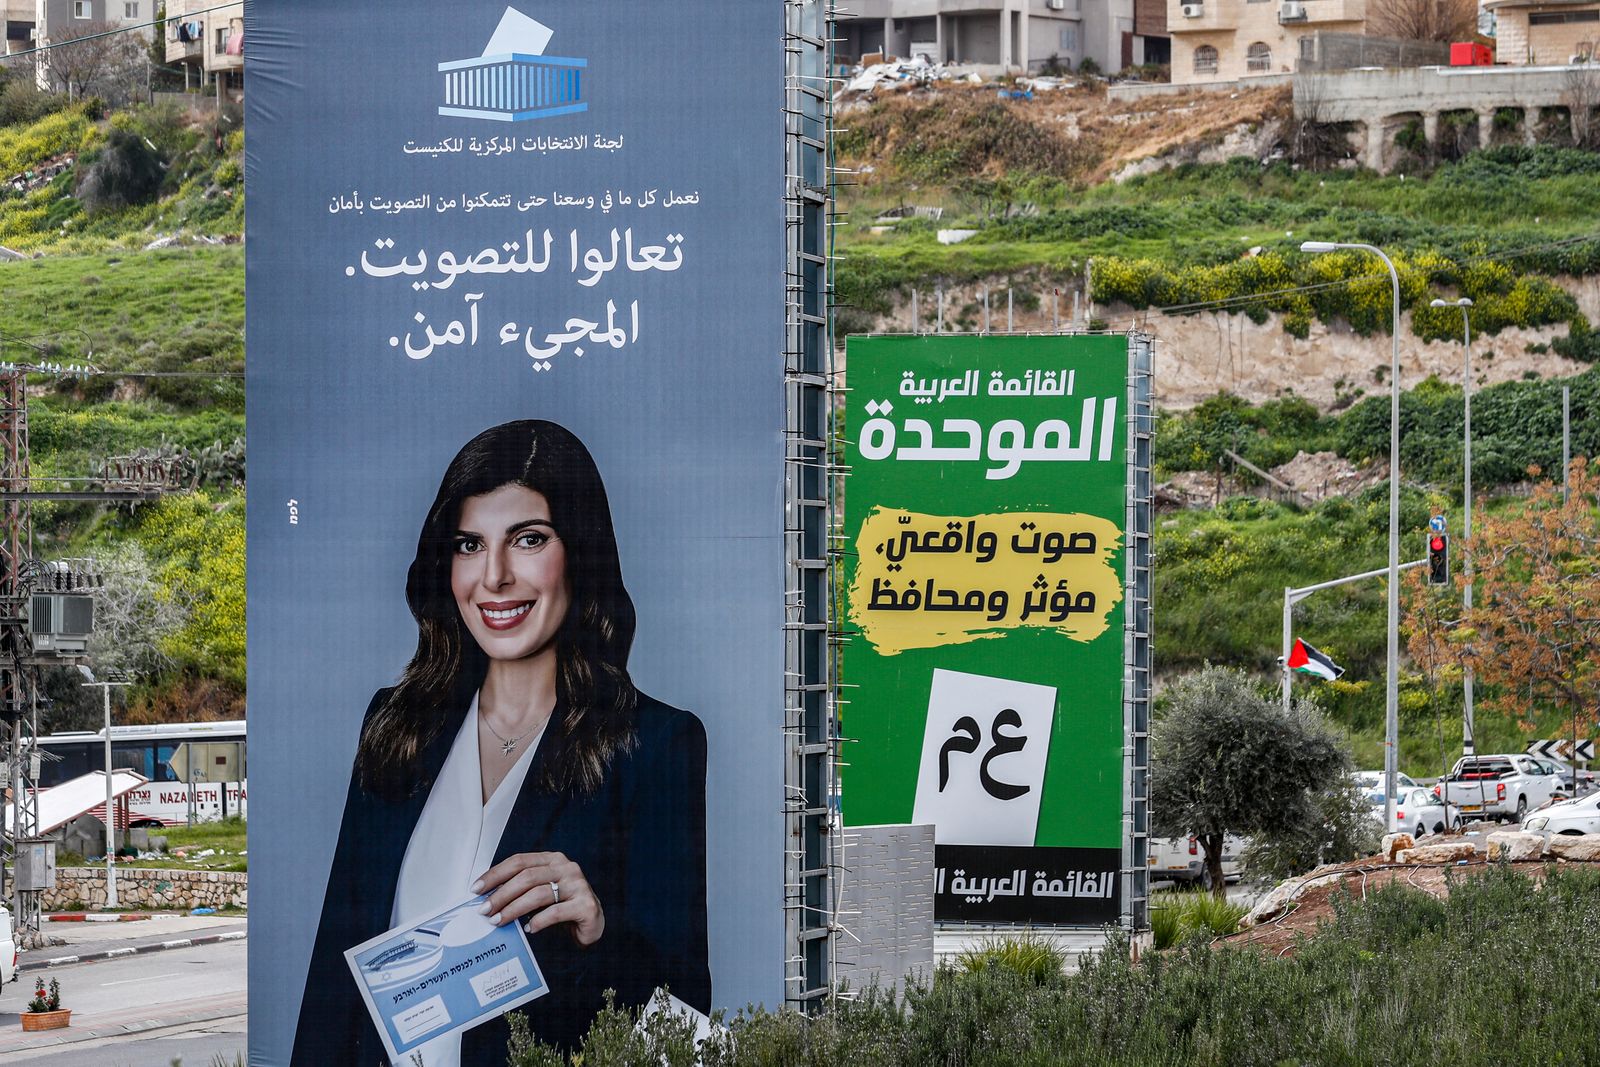 لوحة إعلانية انتخابية لحزب القائمة العربية الموحدة، تحمل شعار حملتها 